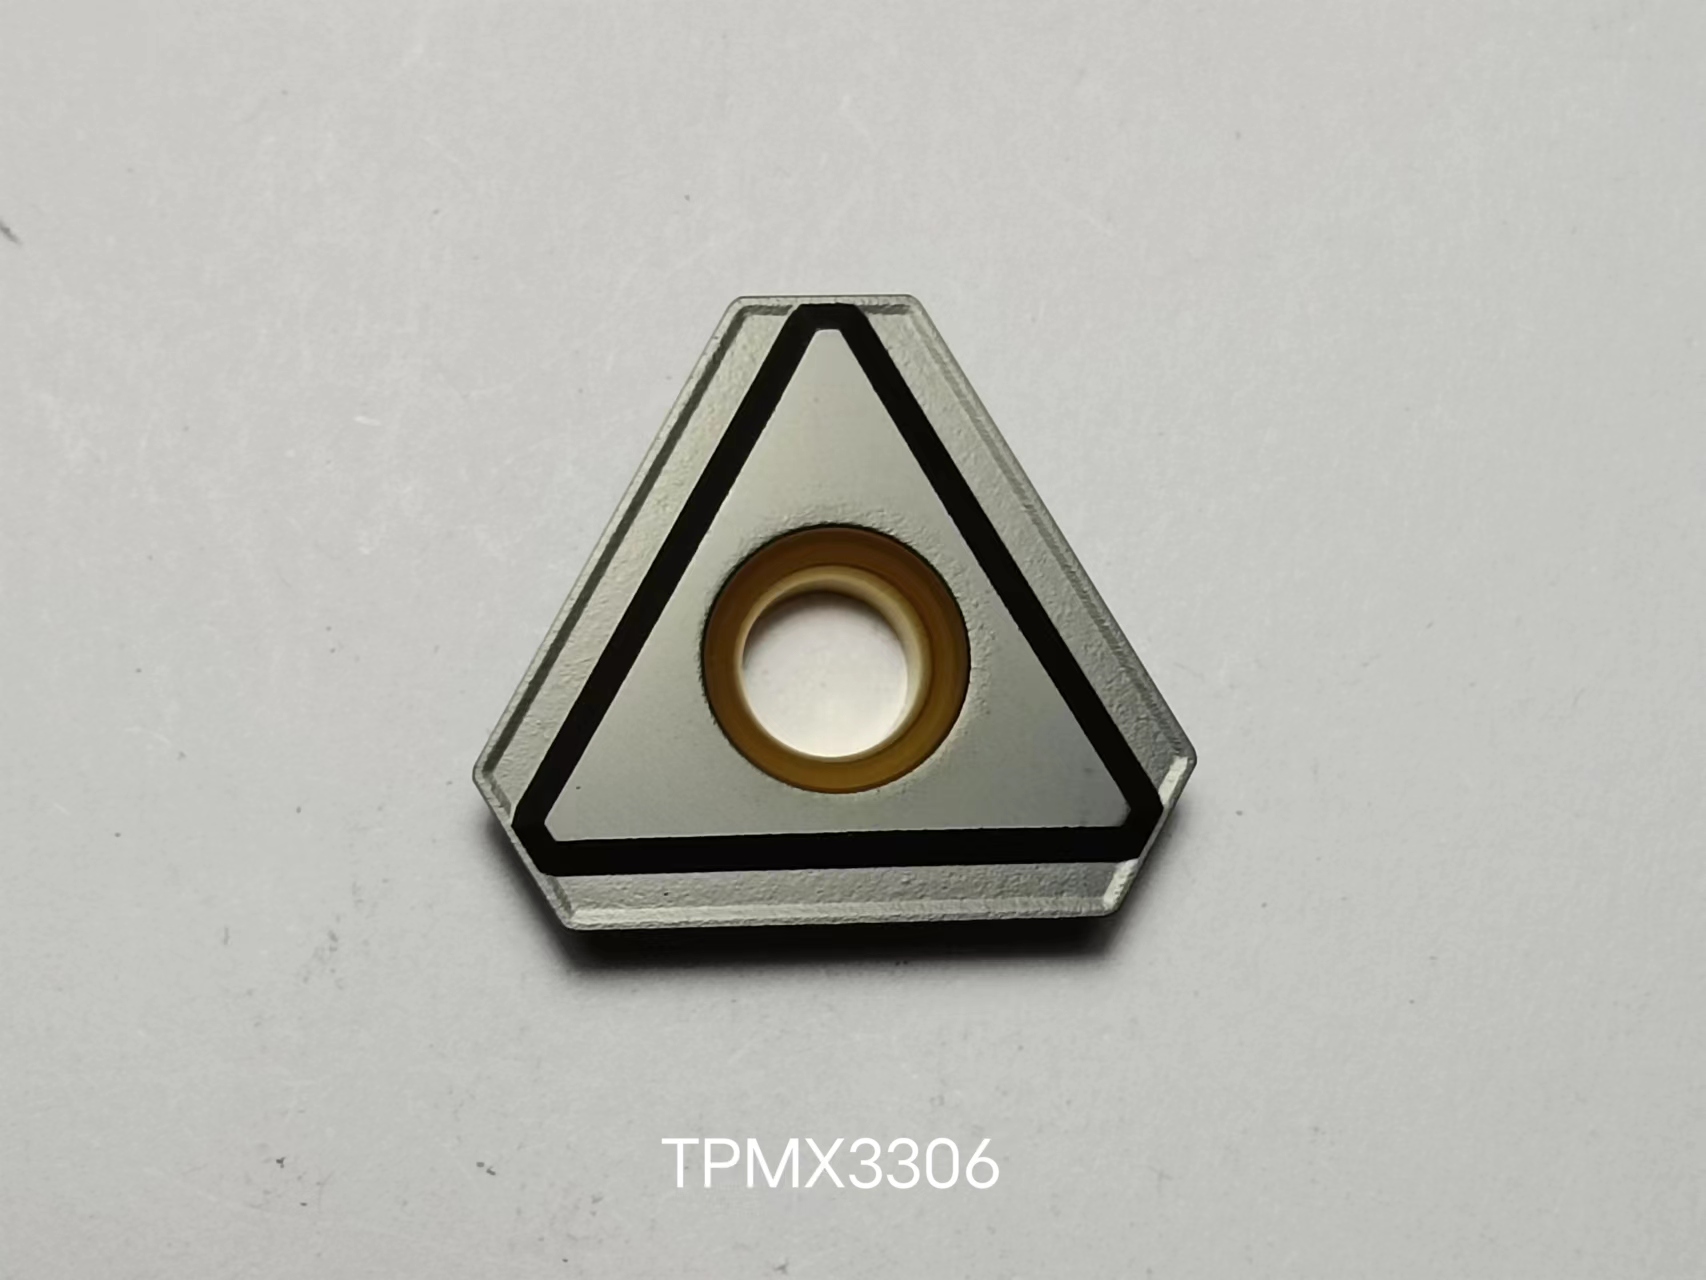 TPMX3306